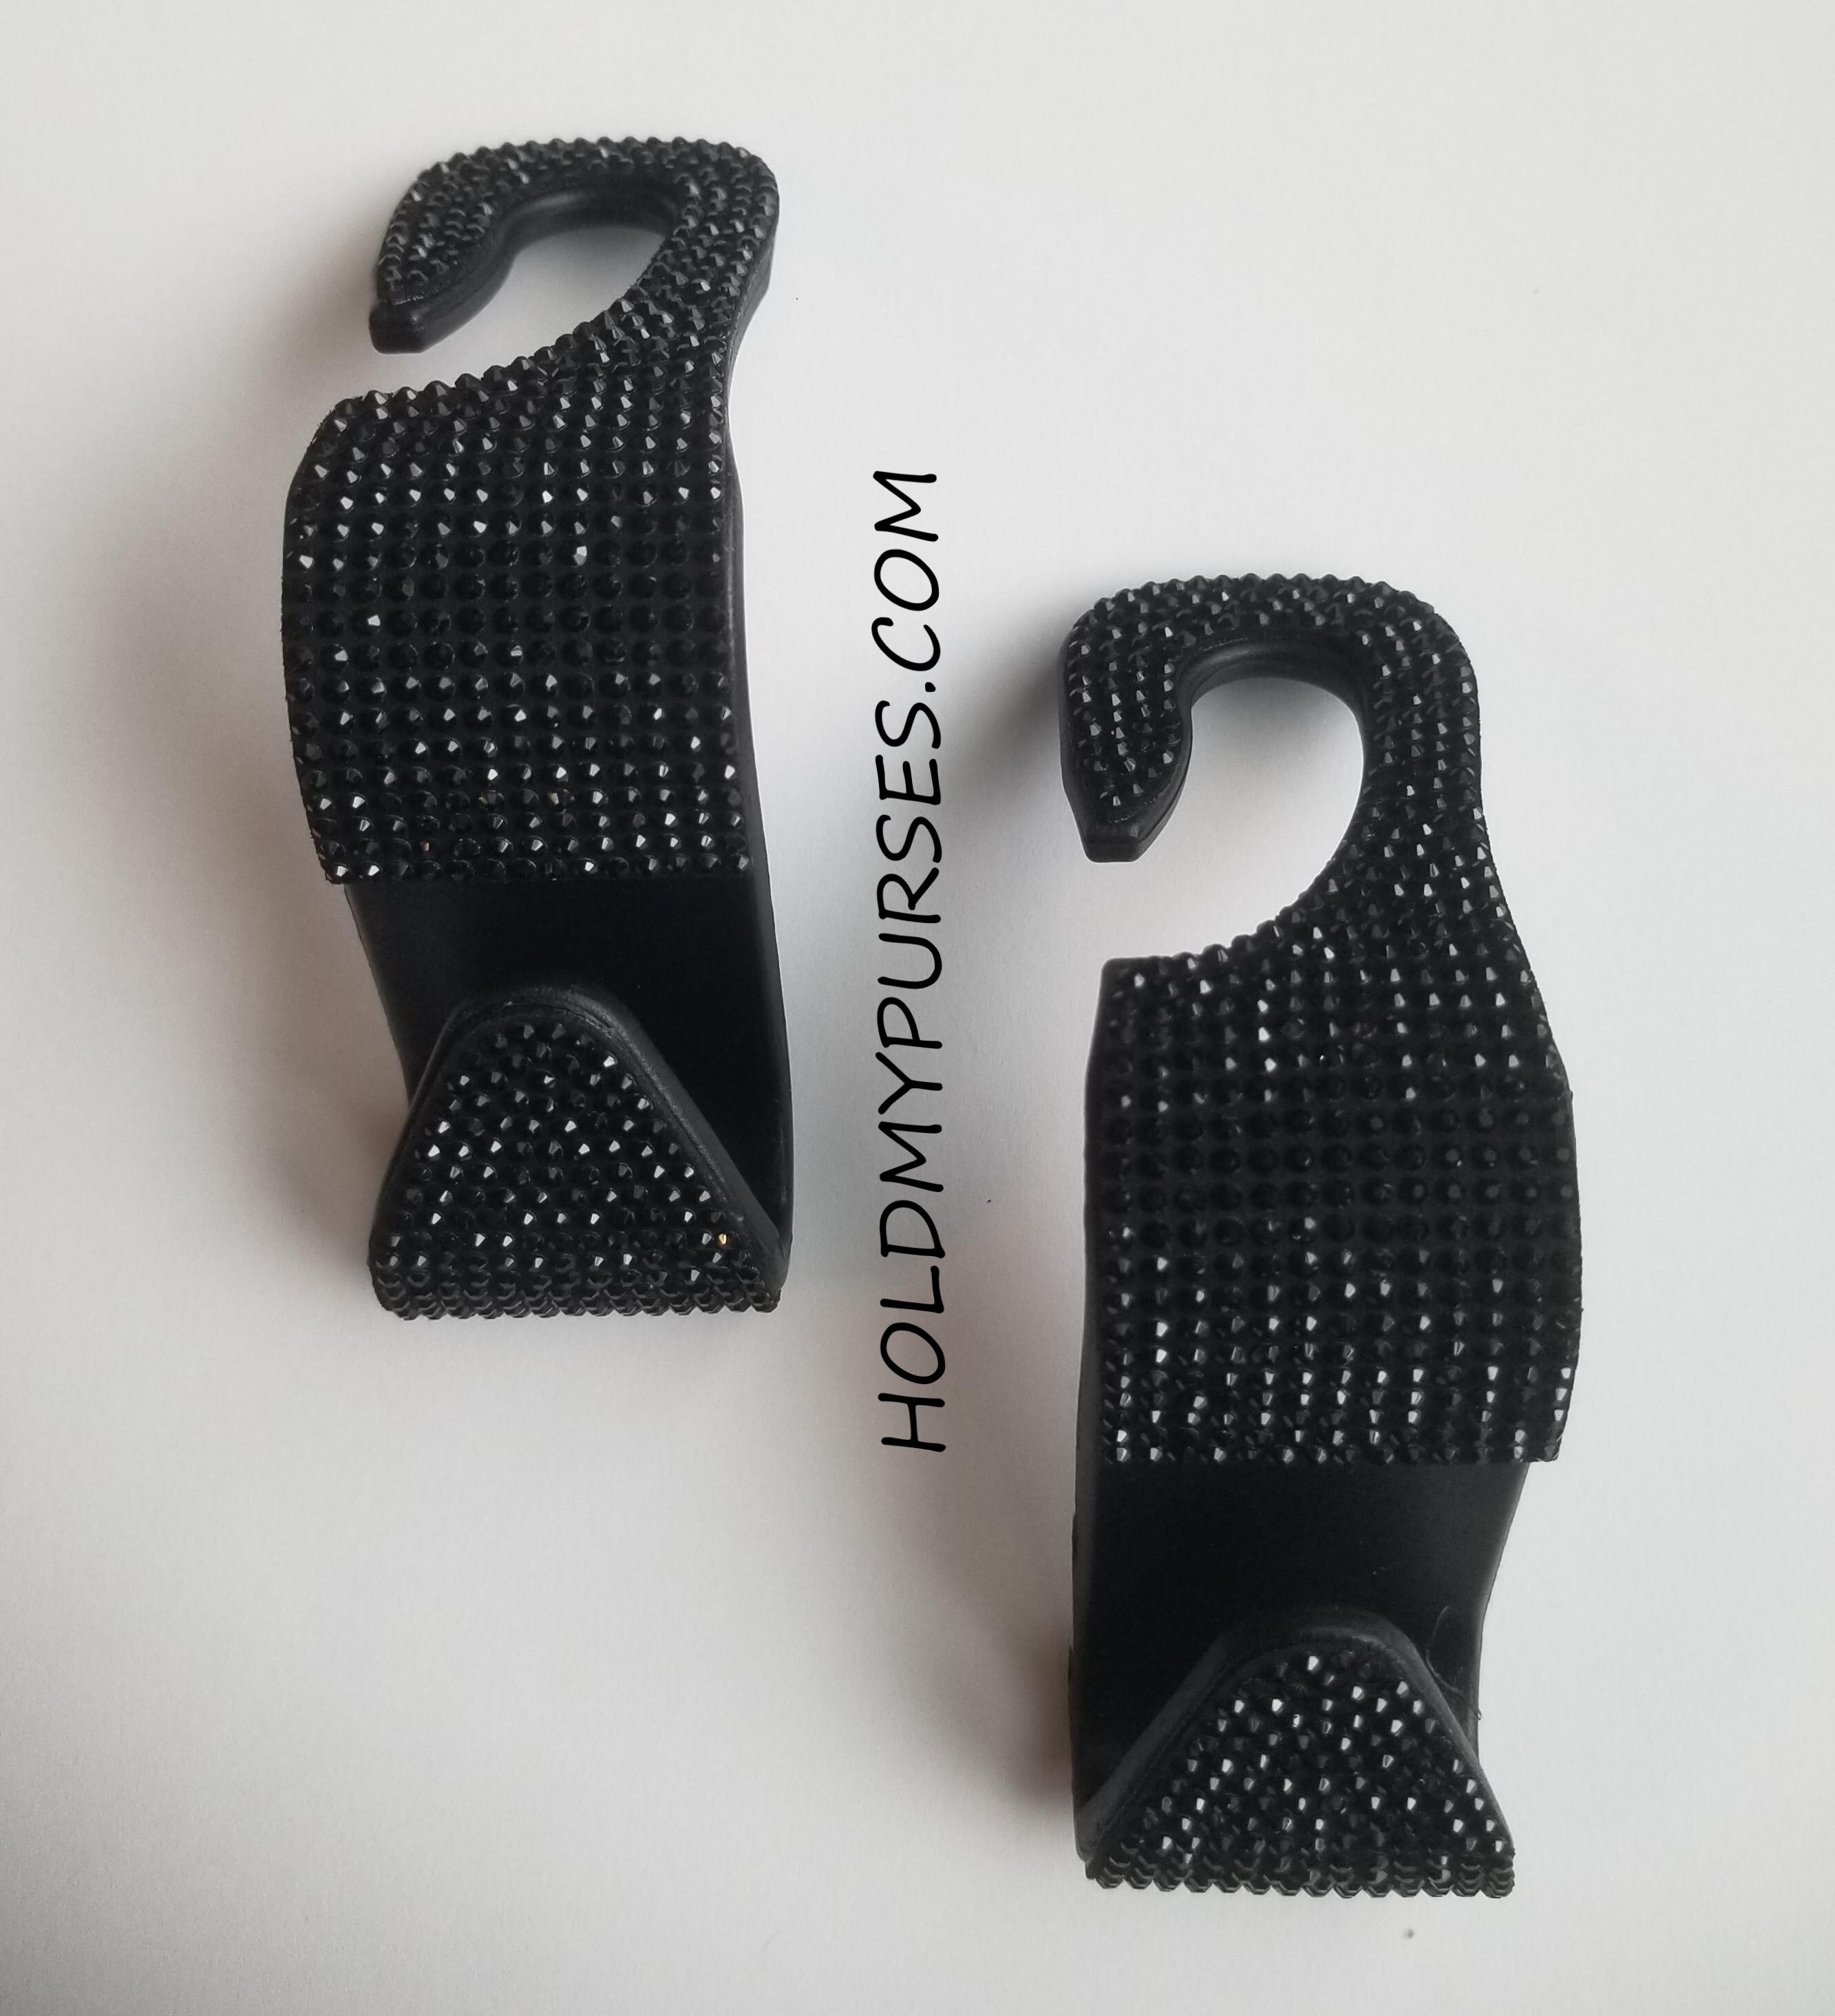 2er-Set Multifunktionale Auto-Kopfstützenhaken - Doppelhaken für Taschen  und Gegenstände - Praktische Sitz-Kopfstützenhalter